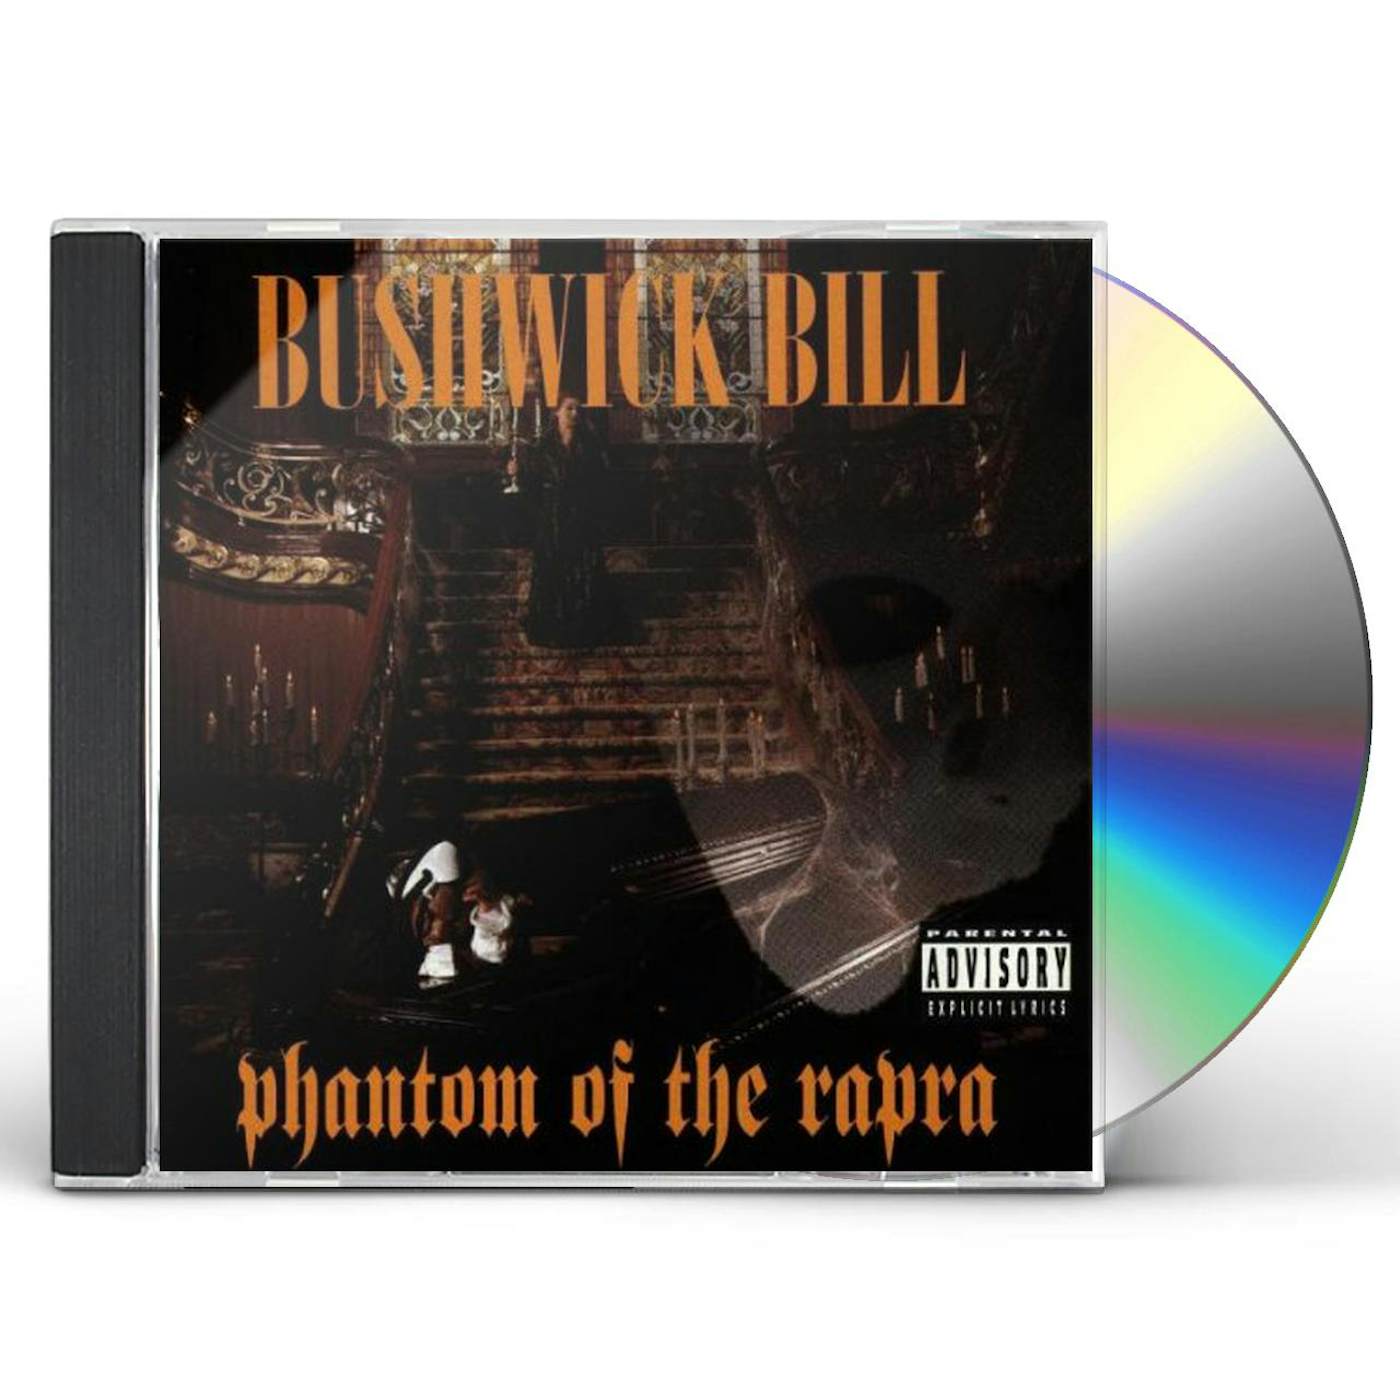 Bushwick Bill PHANTOM OF THE RAPRA CD